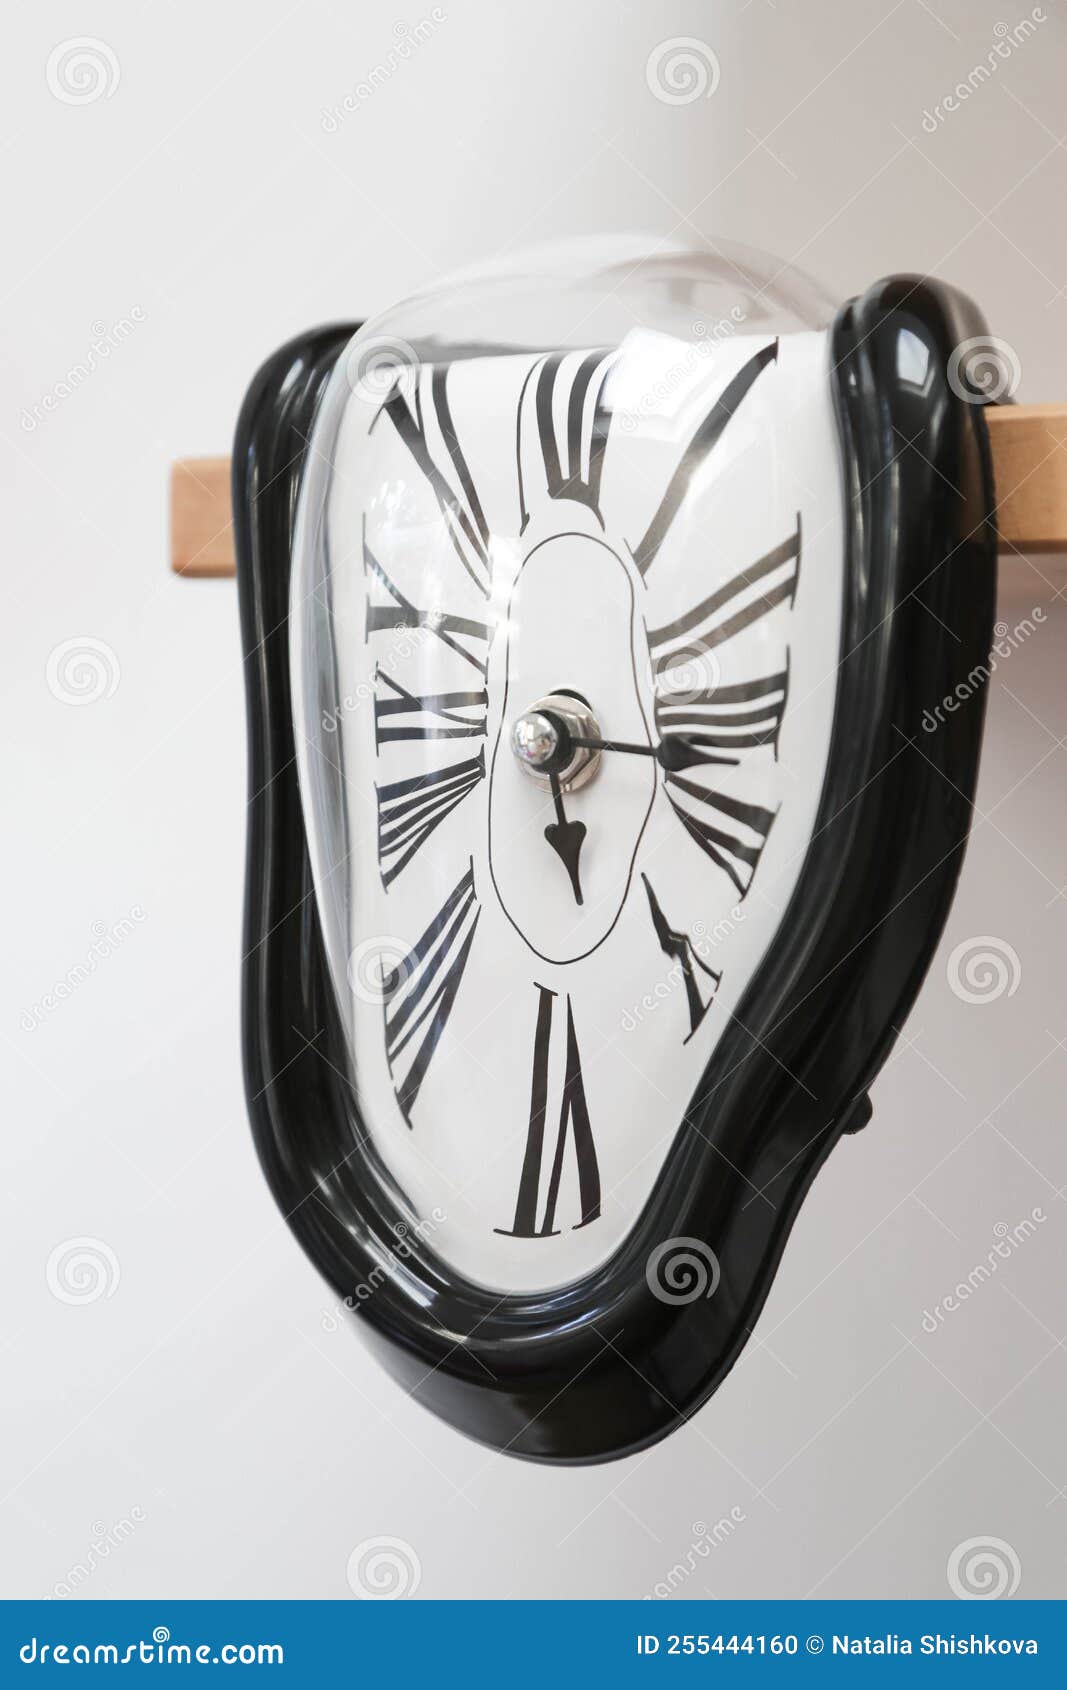 robot Persona especial ajuste Los Relojes Decorativos Drenan El Estante. El Reloj Es Un Símbolo De La  Impermanencia Del Tiempo. Foto de archivo - Imagen de estante, plazo:  255444160